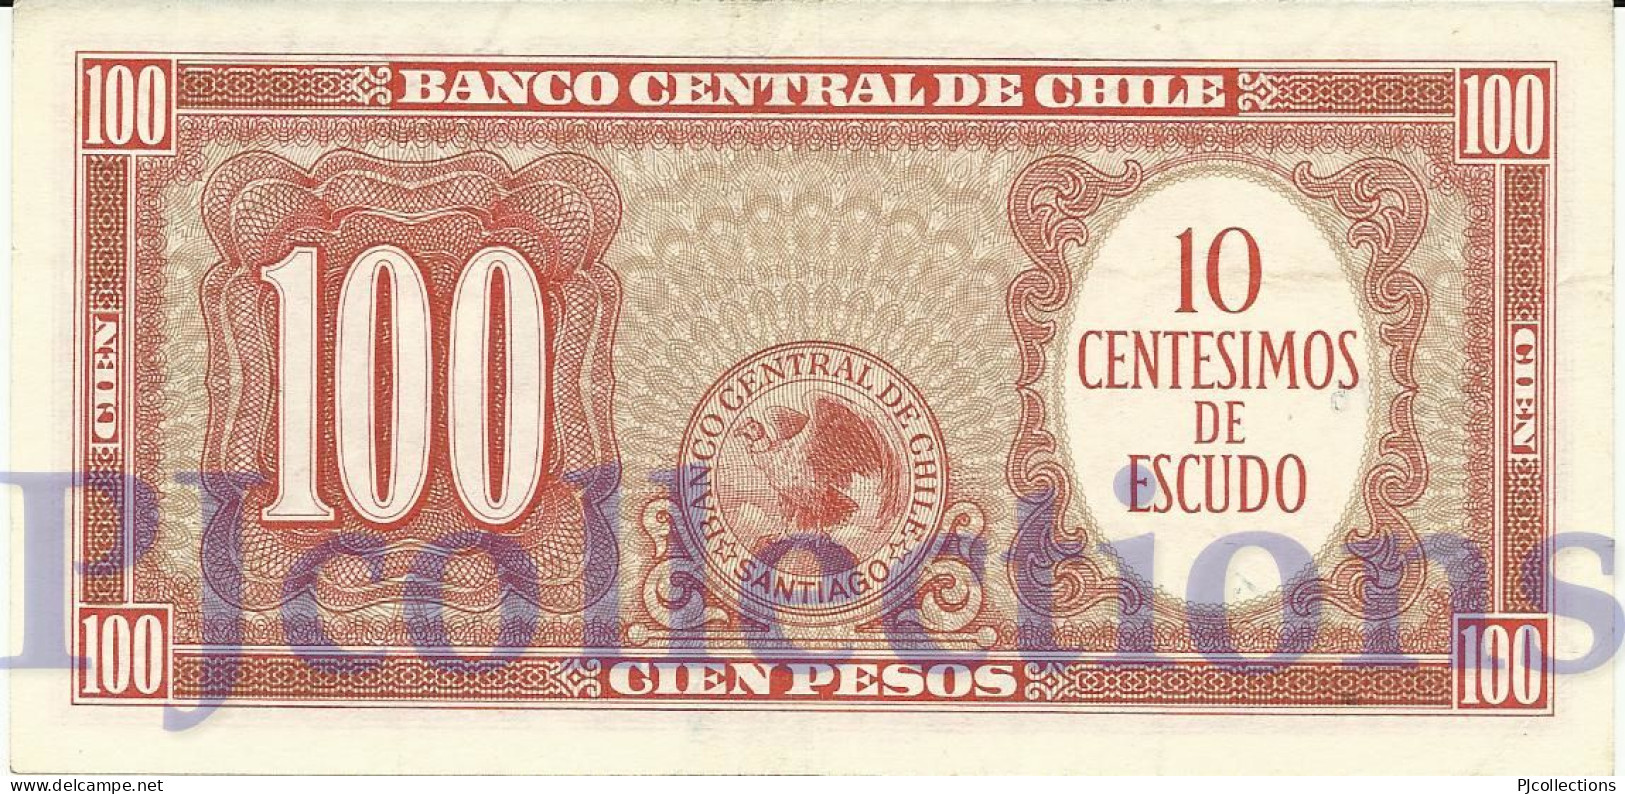 CHILE 10 CENTESIMOS 1960/1961 PICK 127a AUNC - Cile